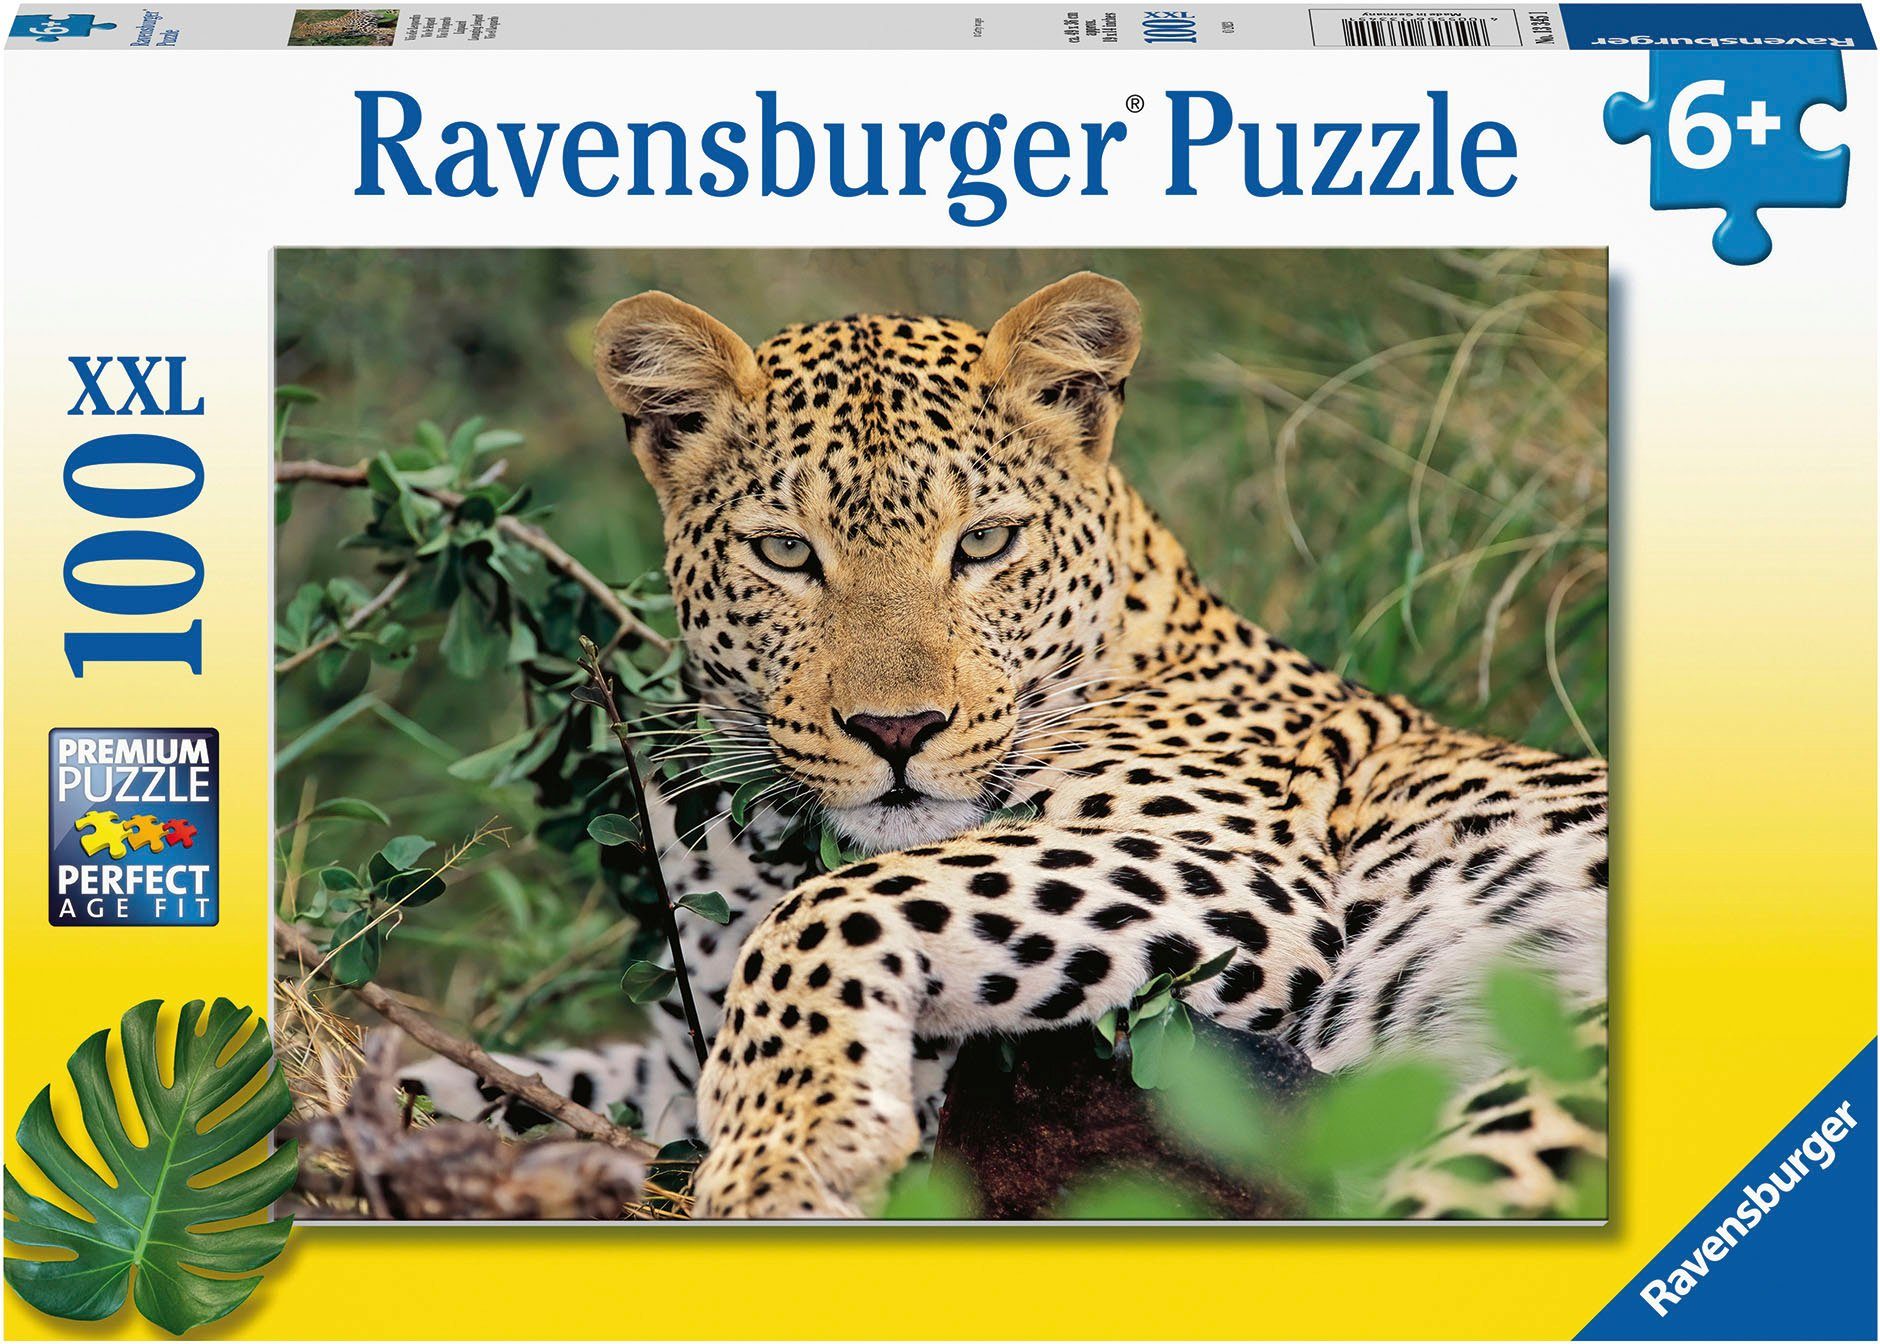 100 Germany; Wald weltweit in Vio schützt Ravensburger - Made Leopardin, Puzzleteile, die FSC®- Puzzle